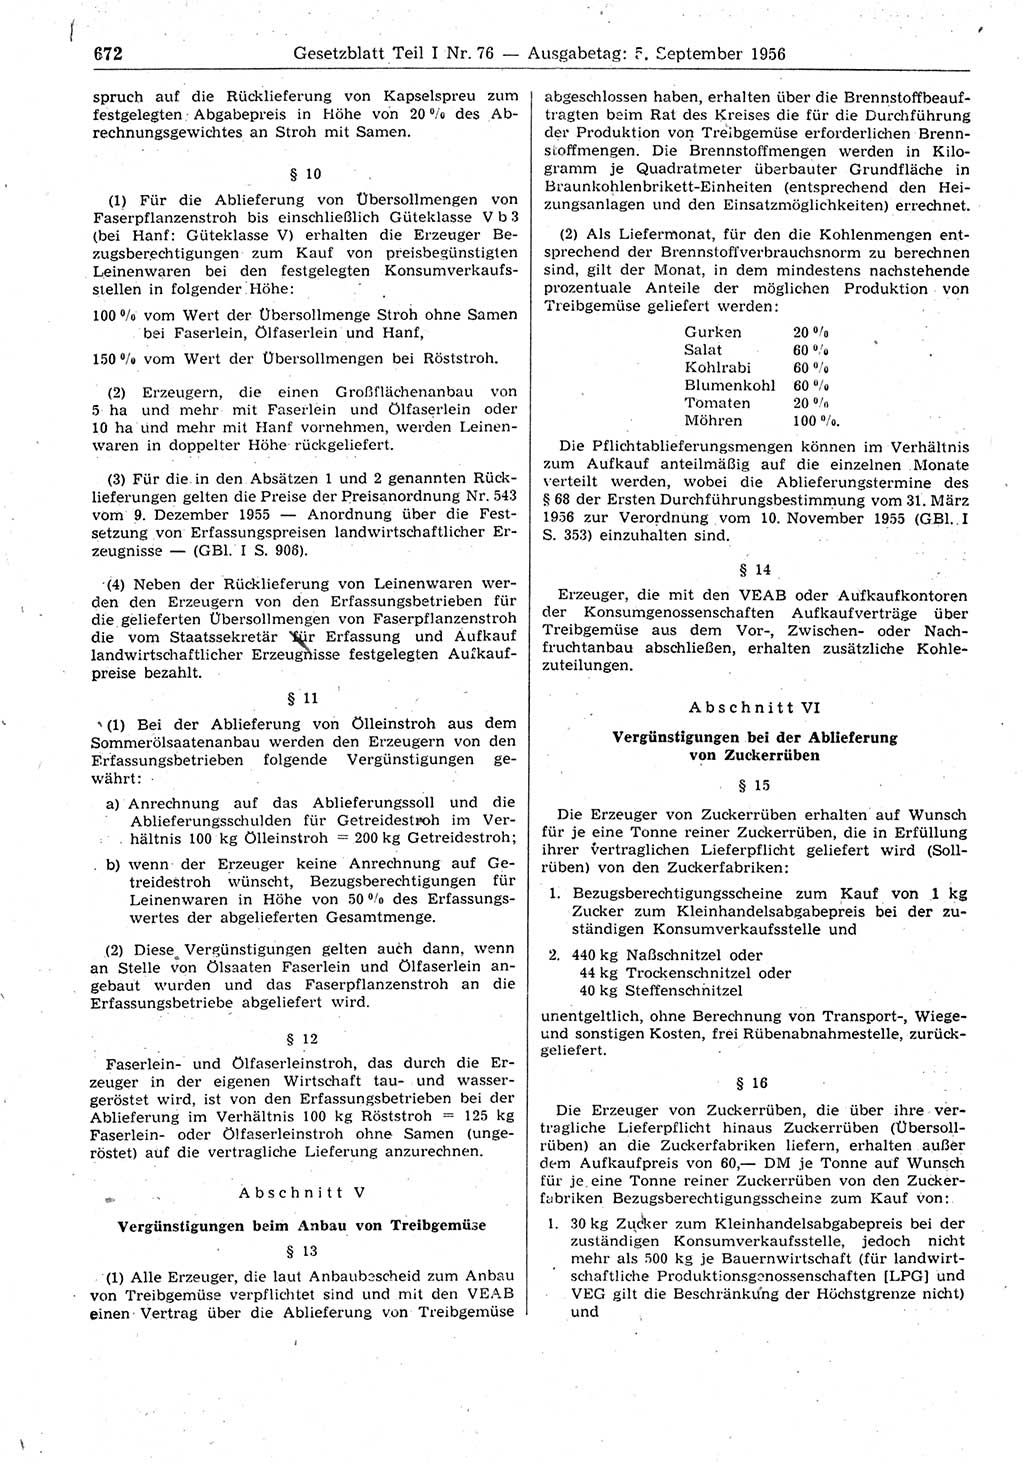 Gesetzblatt (GBl.) der Deutschen Demokratischen Republik (DDR) Teil Ⅰ 1956, Seite 672 (GBl. DDR Ⅰ 1956, S. 672)